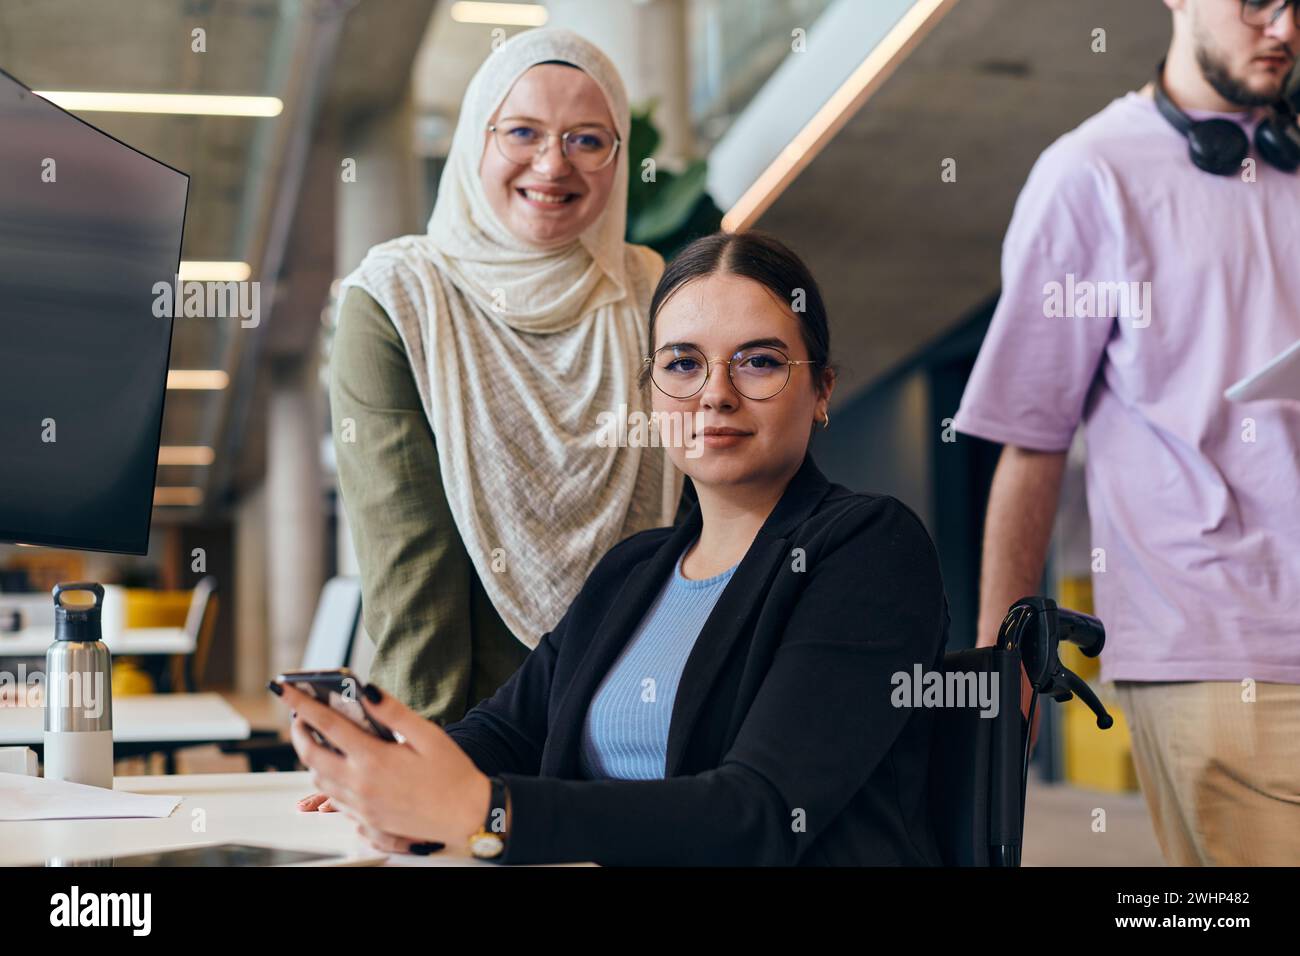 Dans une start-up moderne dynamique et diversifiée, un groupe de femmes d’affaires contemporaines, dont une portant un hijab, se réunissent, ex Banque D'Images